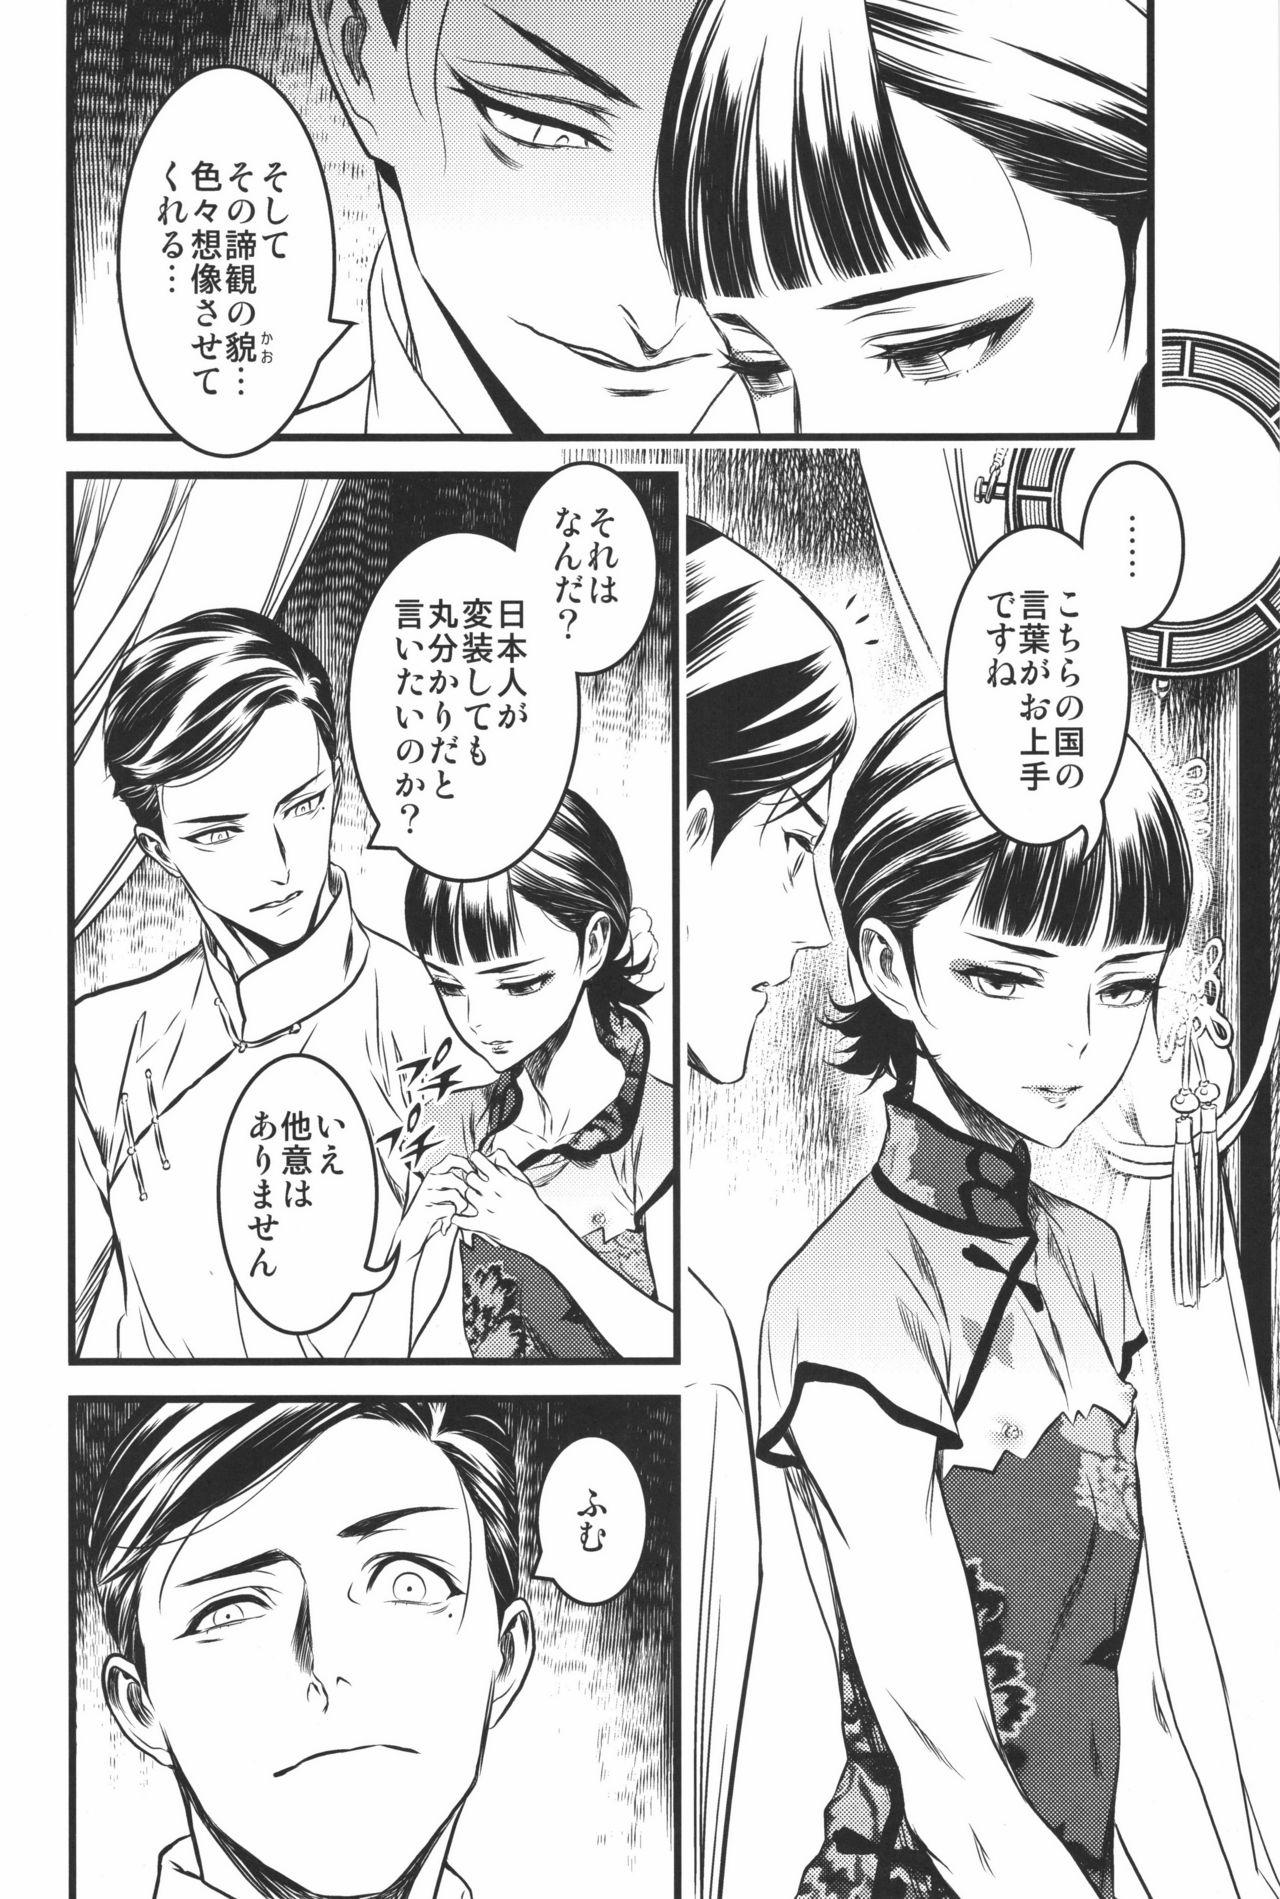 Skirt Mato Shanghai no Shonen - Joker game Plug - Page 5